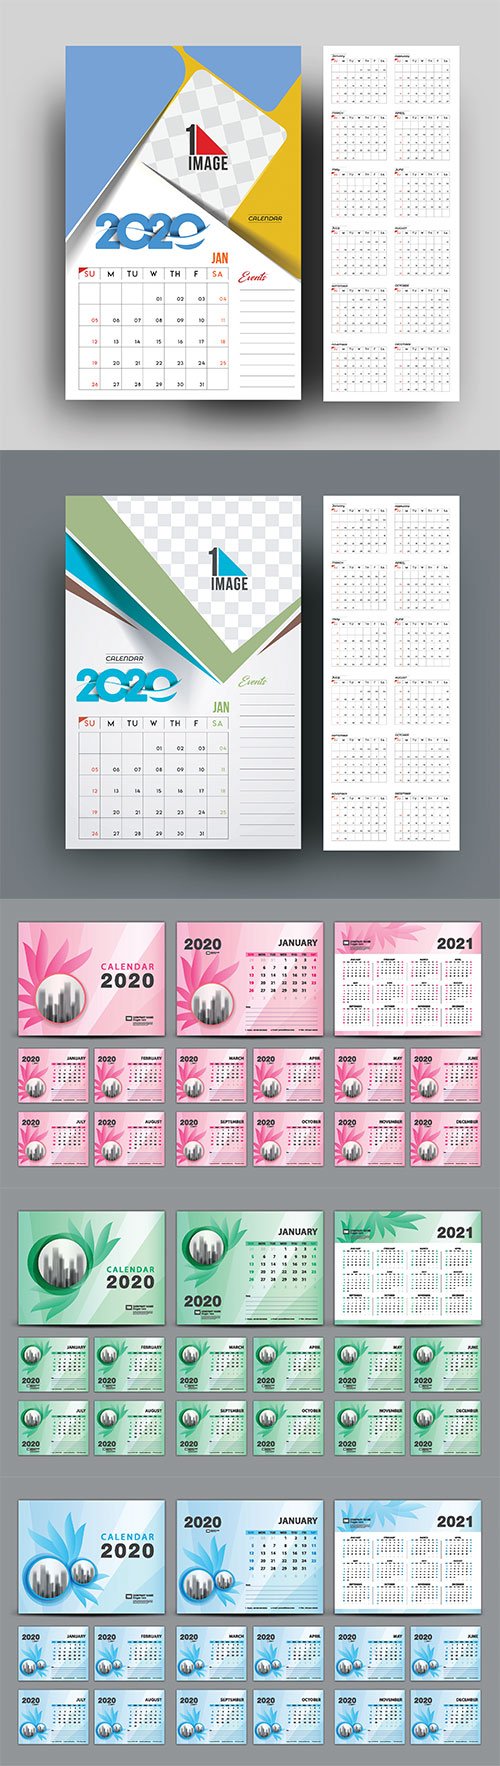 Desk Calendar 2020 template vector, cover design